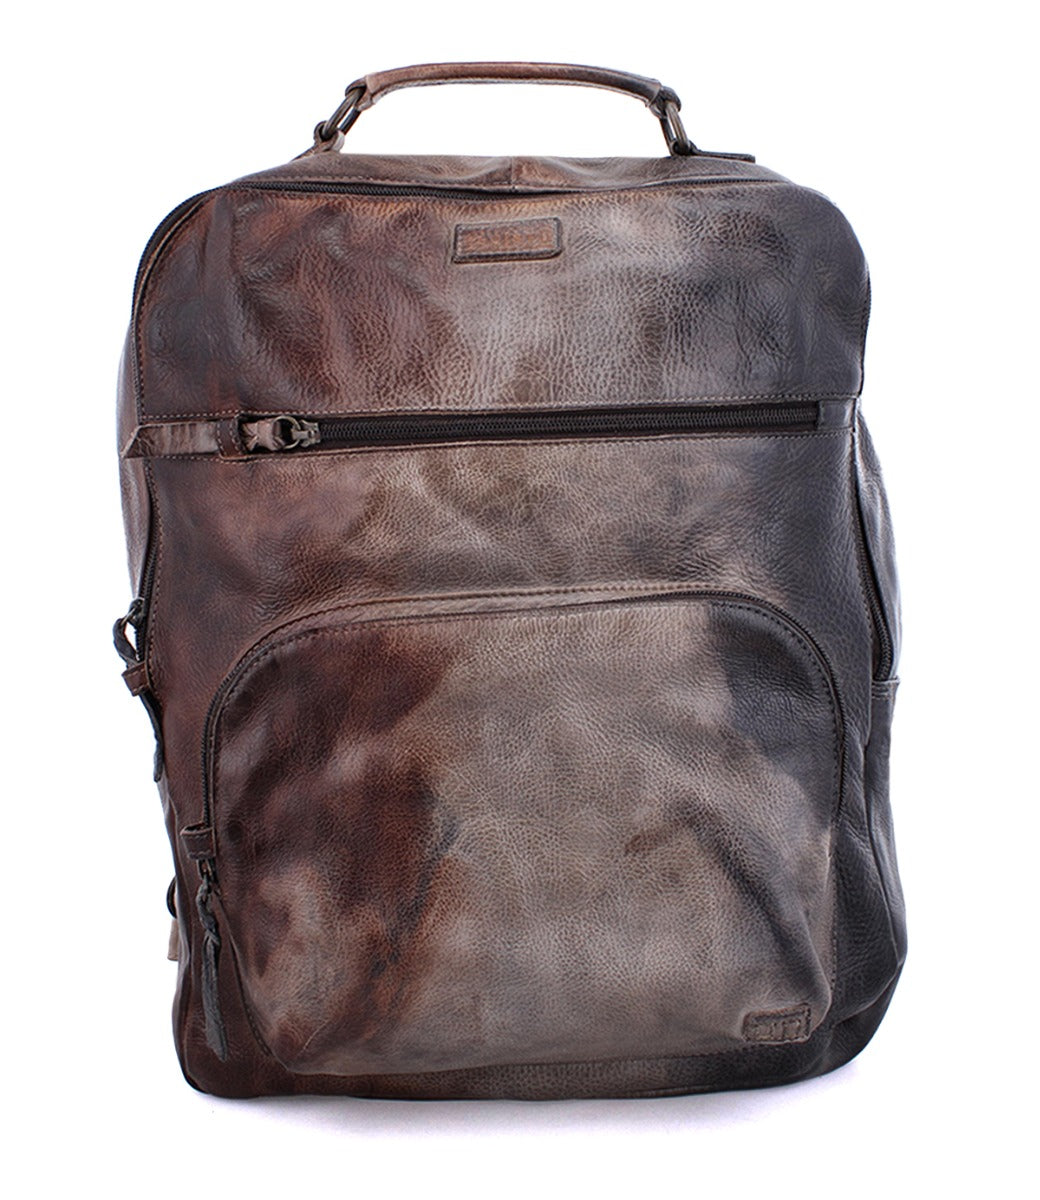 Lafe Backpack by Bedstu